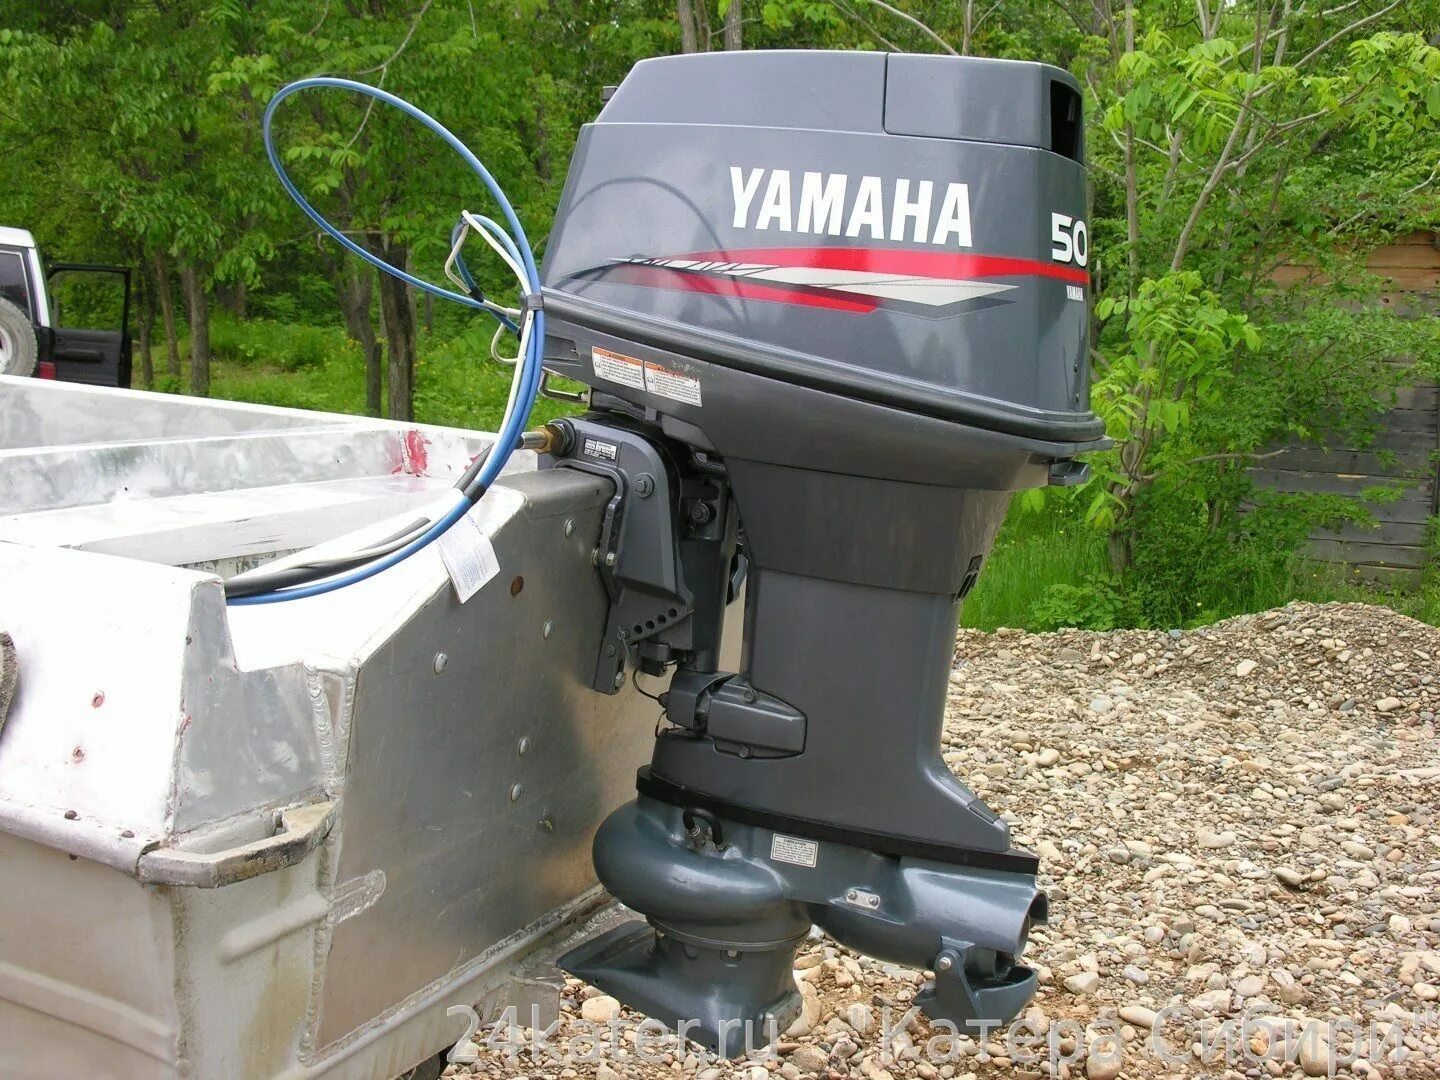 Купить водометный лодочный мотор. Лодочный мотор Yamaha 50hmhos. Yamaha 50 HMHOS. Лодочный мотор Yamaha 50. Yamaha 50 hetol.